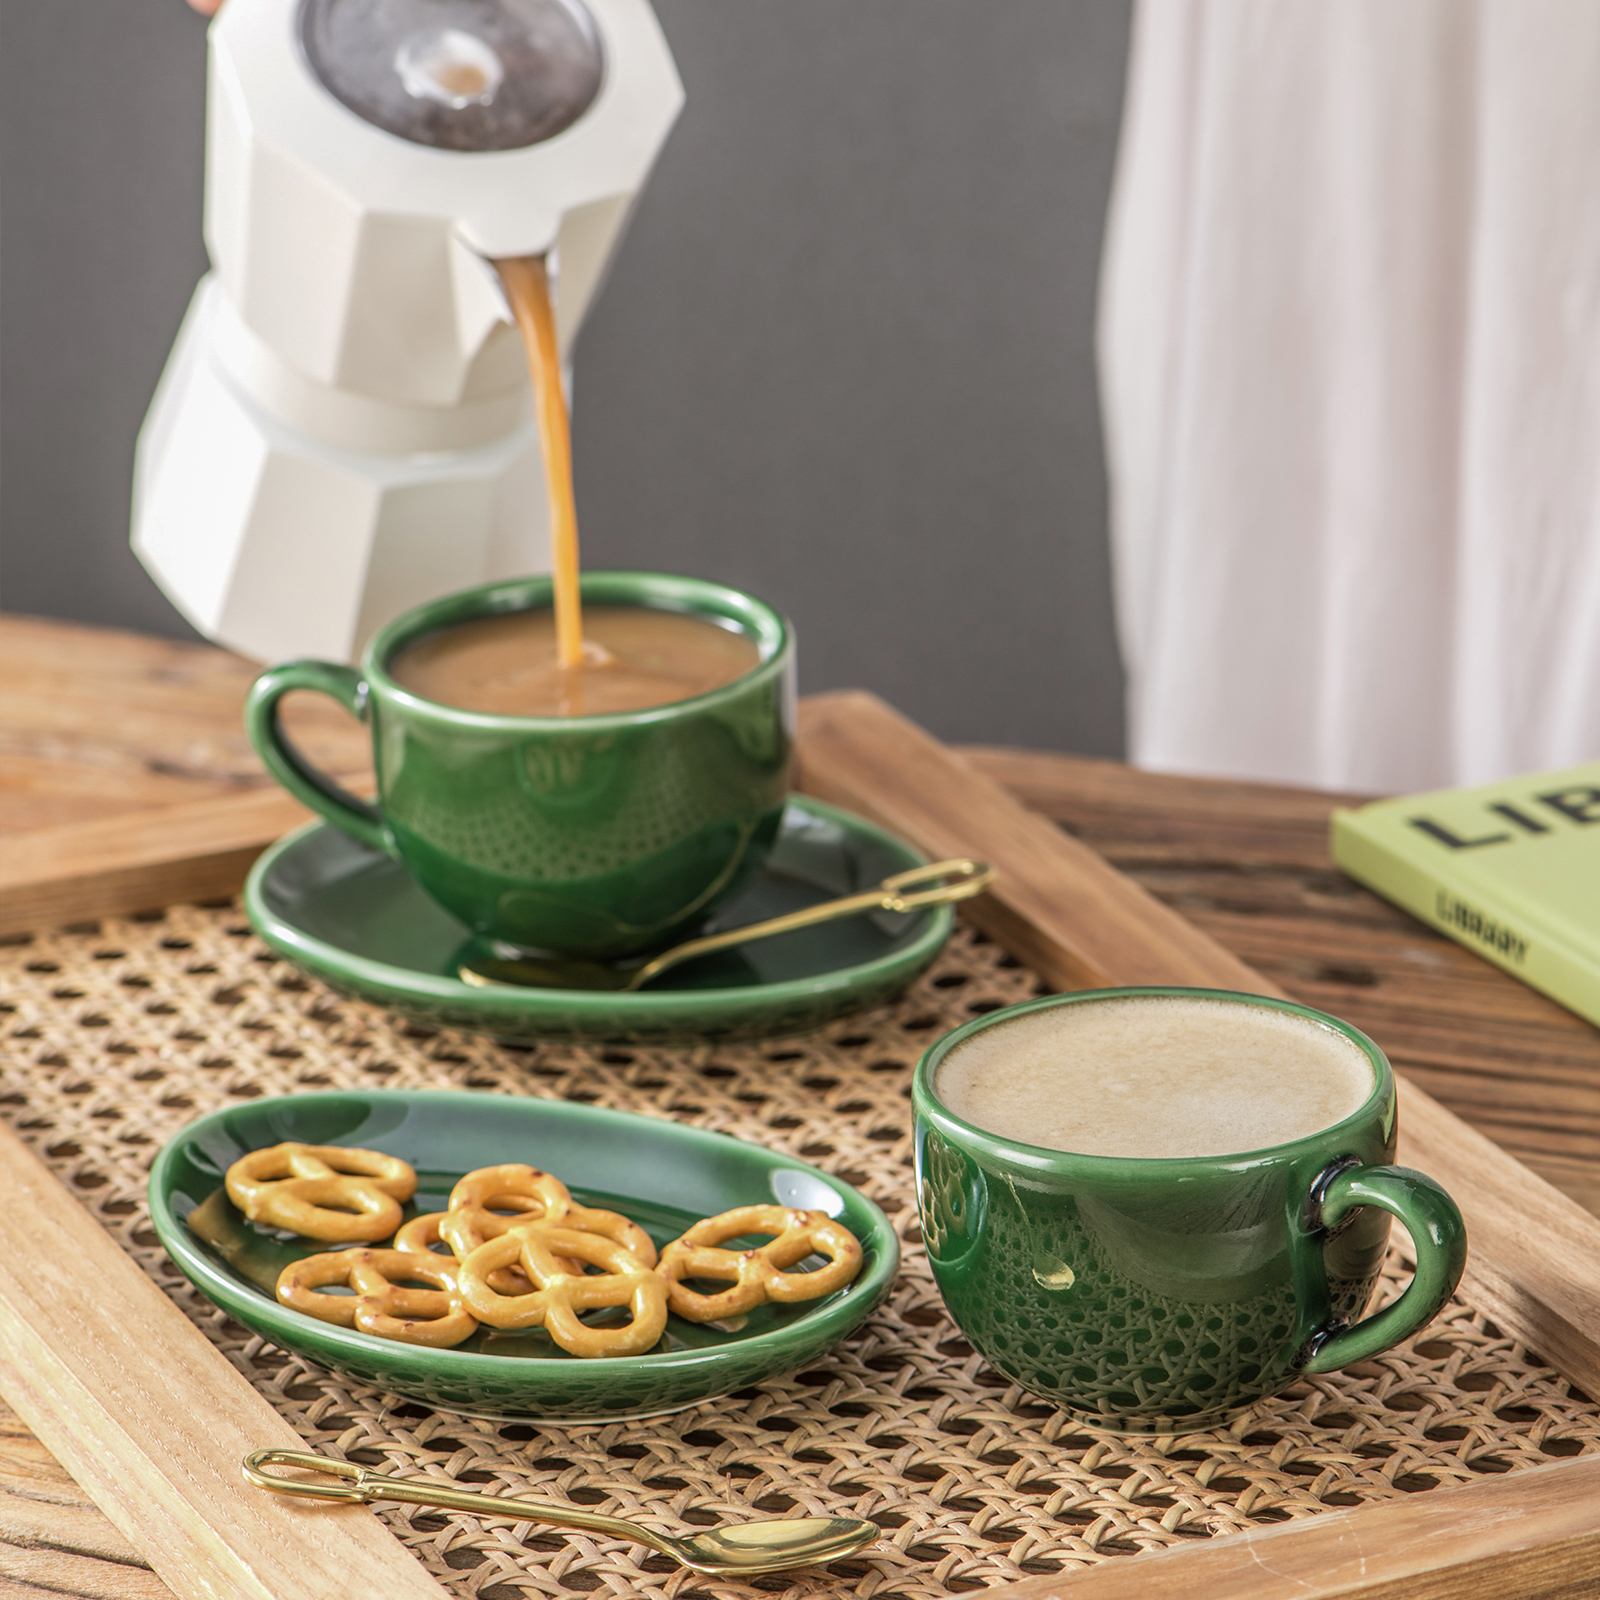 vicrays Juego de tazas de café espresso de cerámica de 4 onzas con  platillos, cucharas y soporte de metal para té, café, capuchino latte,  juego de 6